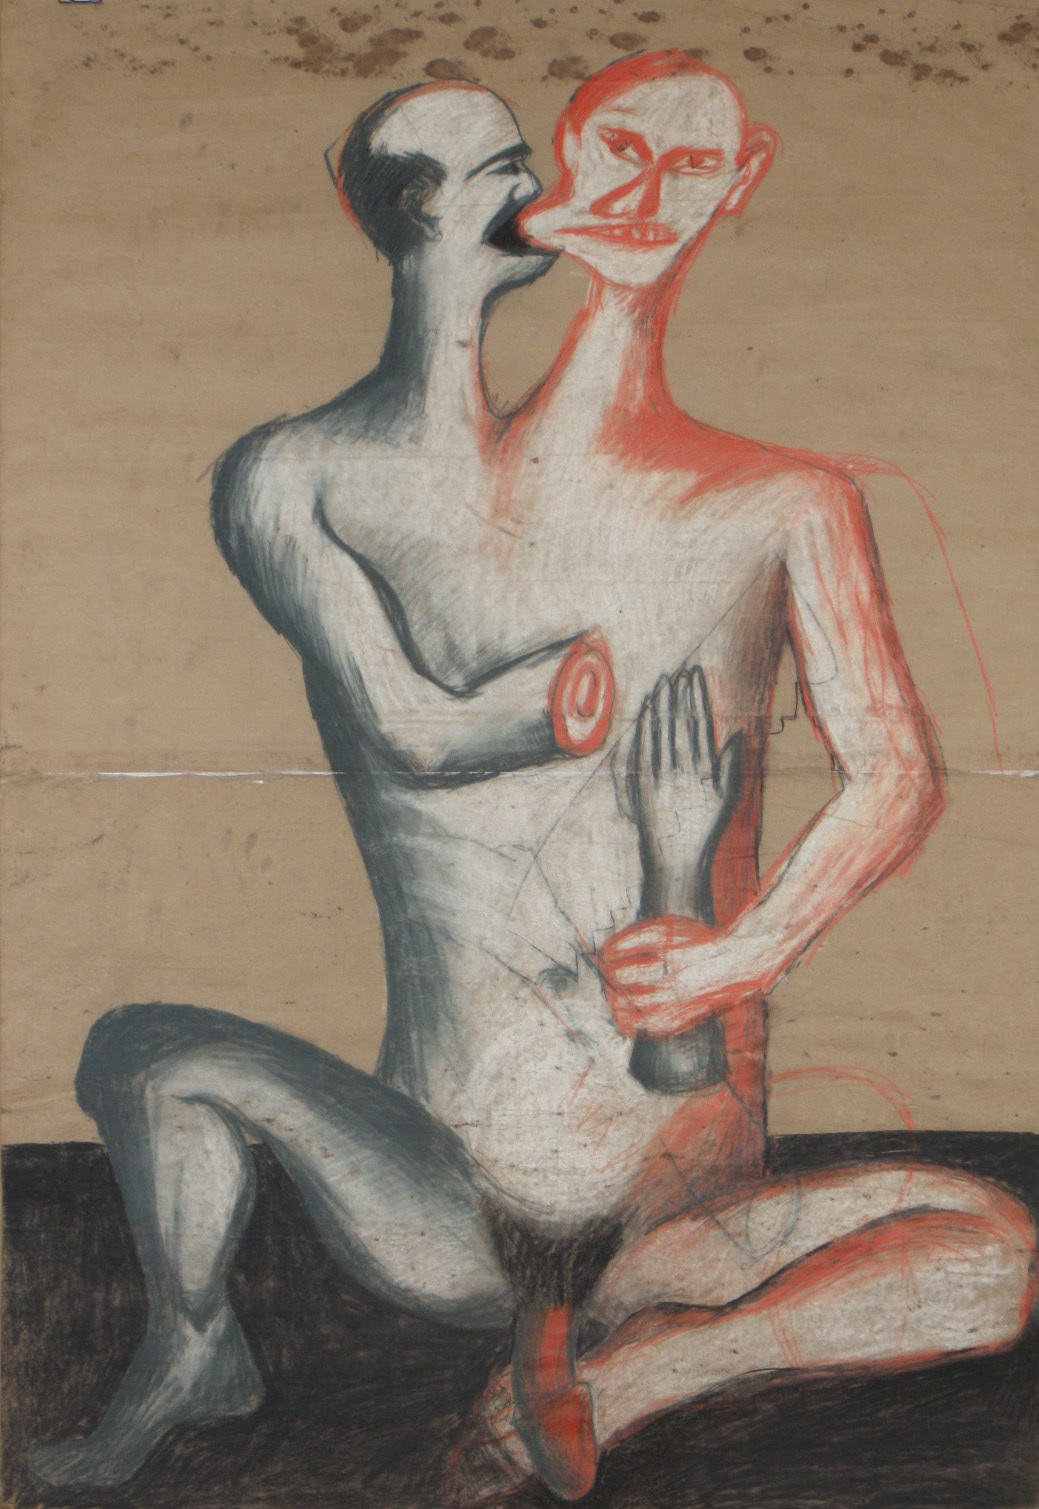 Jarosław Modzelewski, Dwugłowy Chińczyk, węgiel, kreda, kredki, 182 x 126 cm, 1985